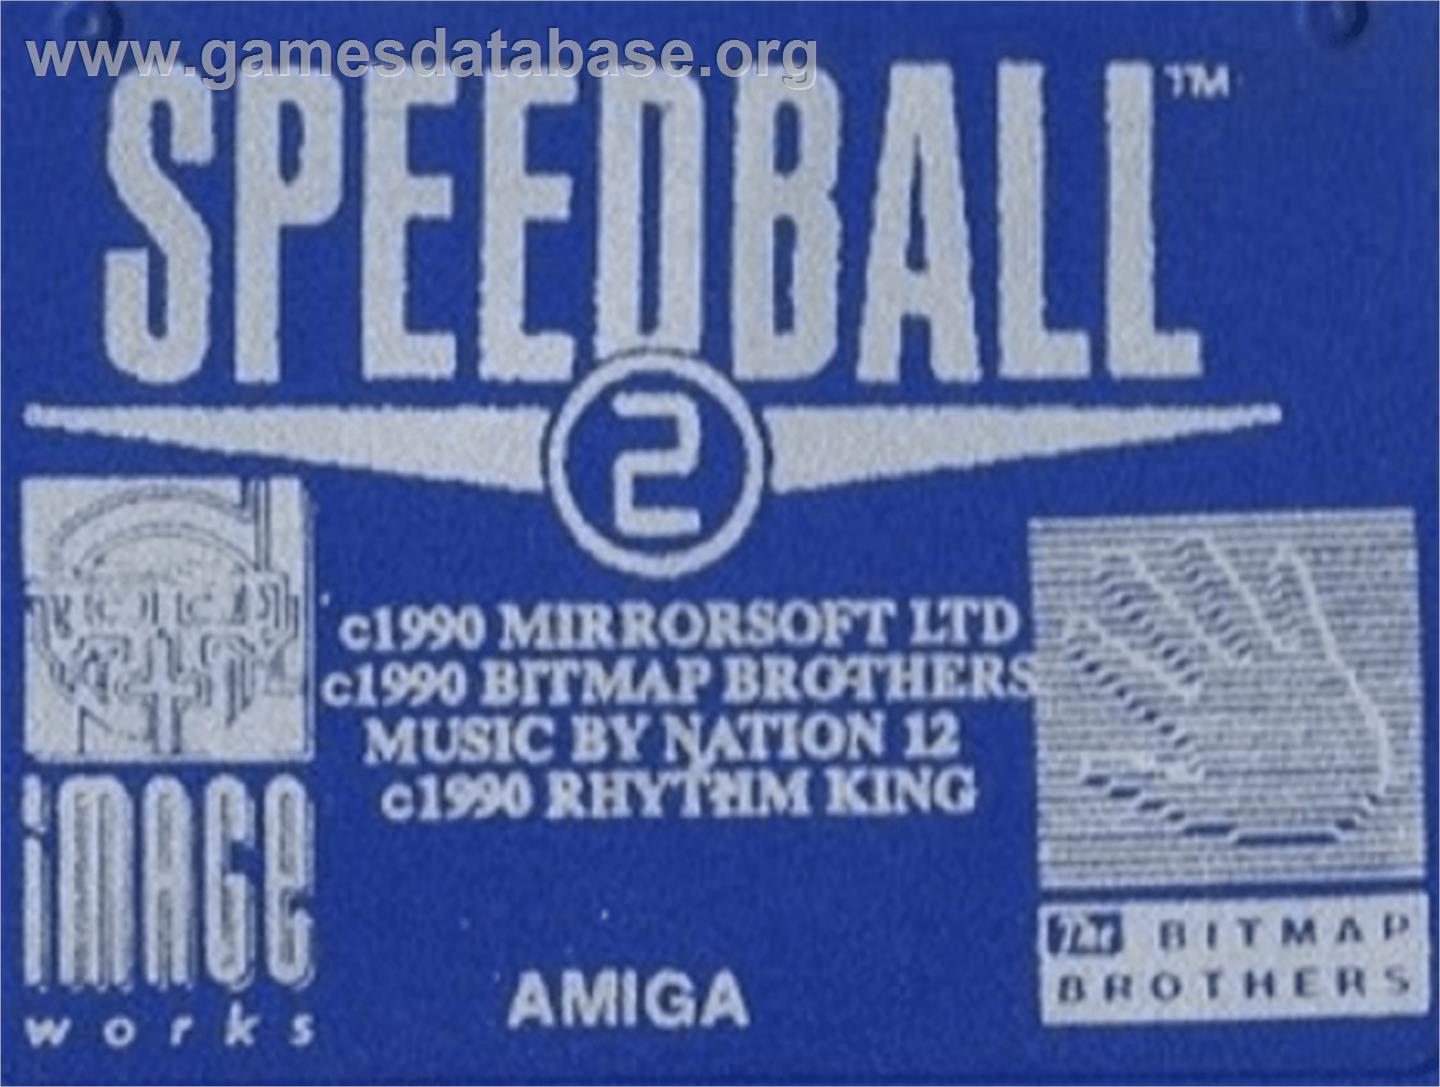 Speedball 2: Brutal Deluxe - Commodore Amiga - Artwork - Cartridge Top